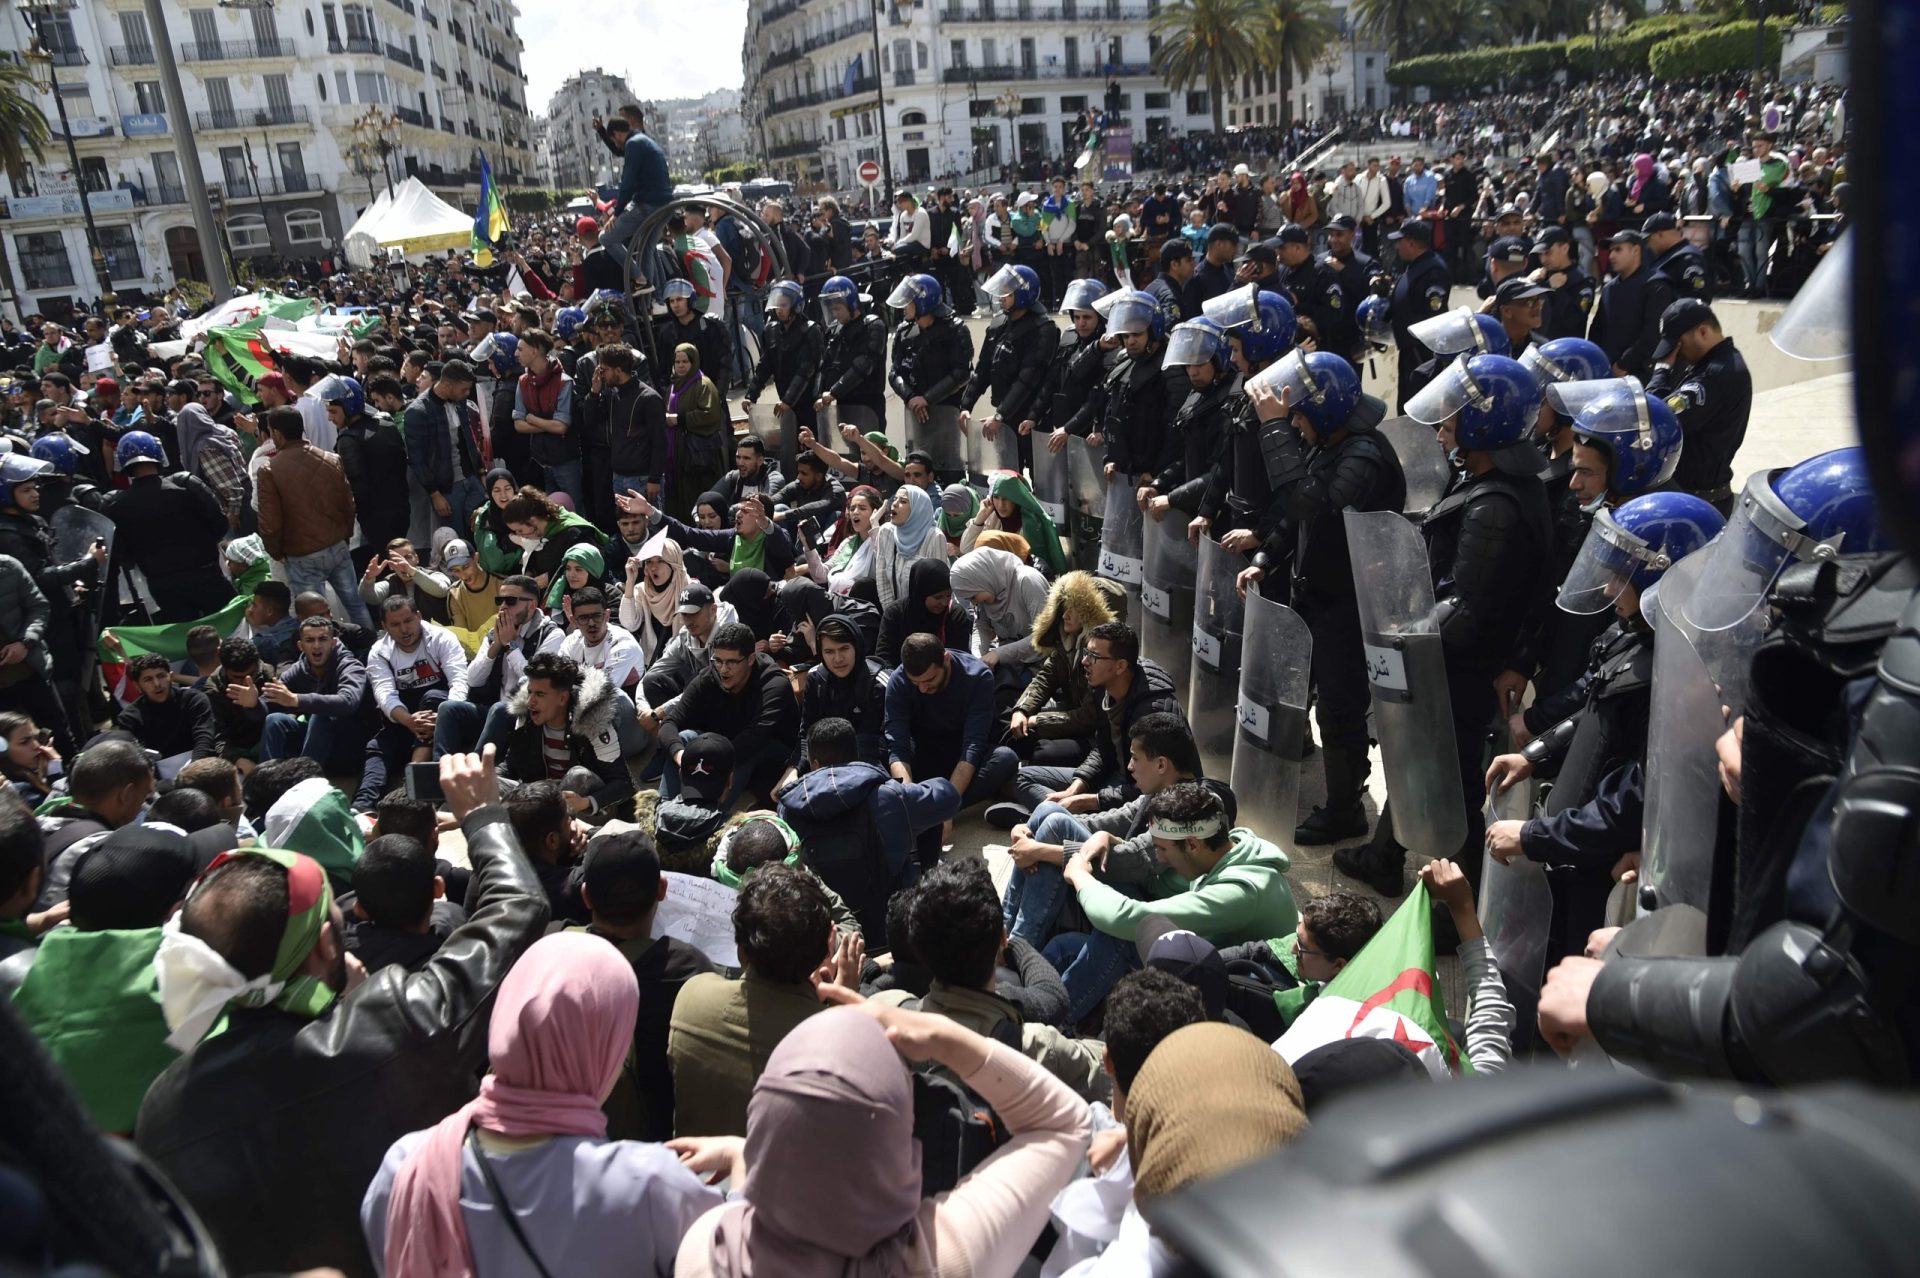 Argélia. Manifestantes saem à rua contra presidente interino